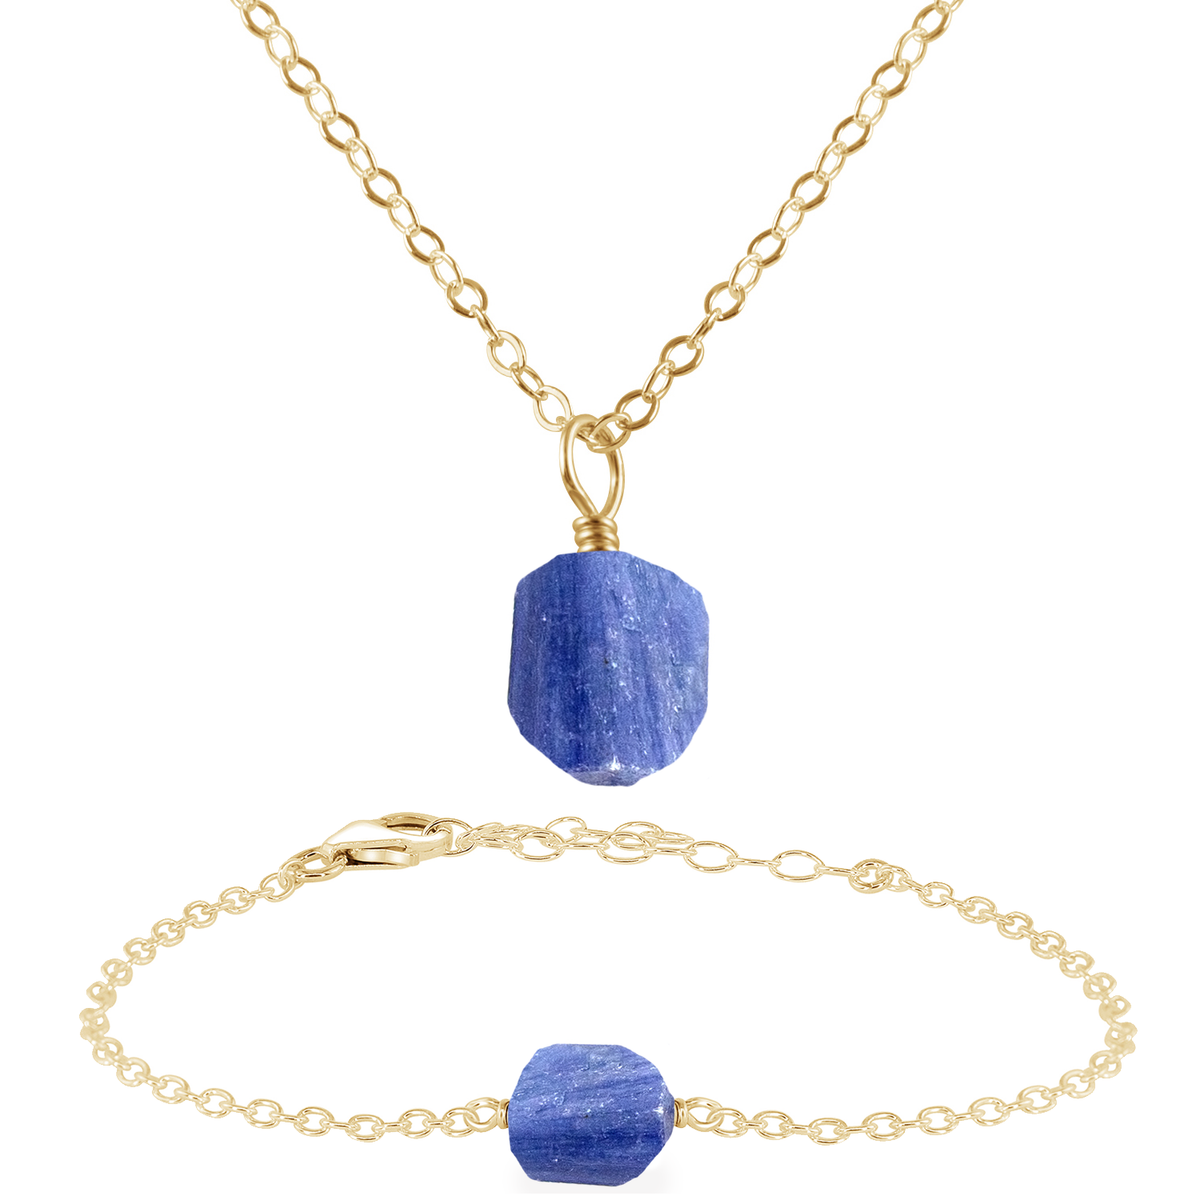 Raw Kyanite Crystal Jewellery Set - Raw Kyanite Crystal Jewellery Set - 14k Gold Fill / Cable / Necklace & Bracelet - Luna Tide Handmade Crystal Jewellery